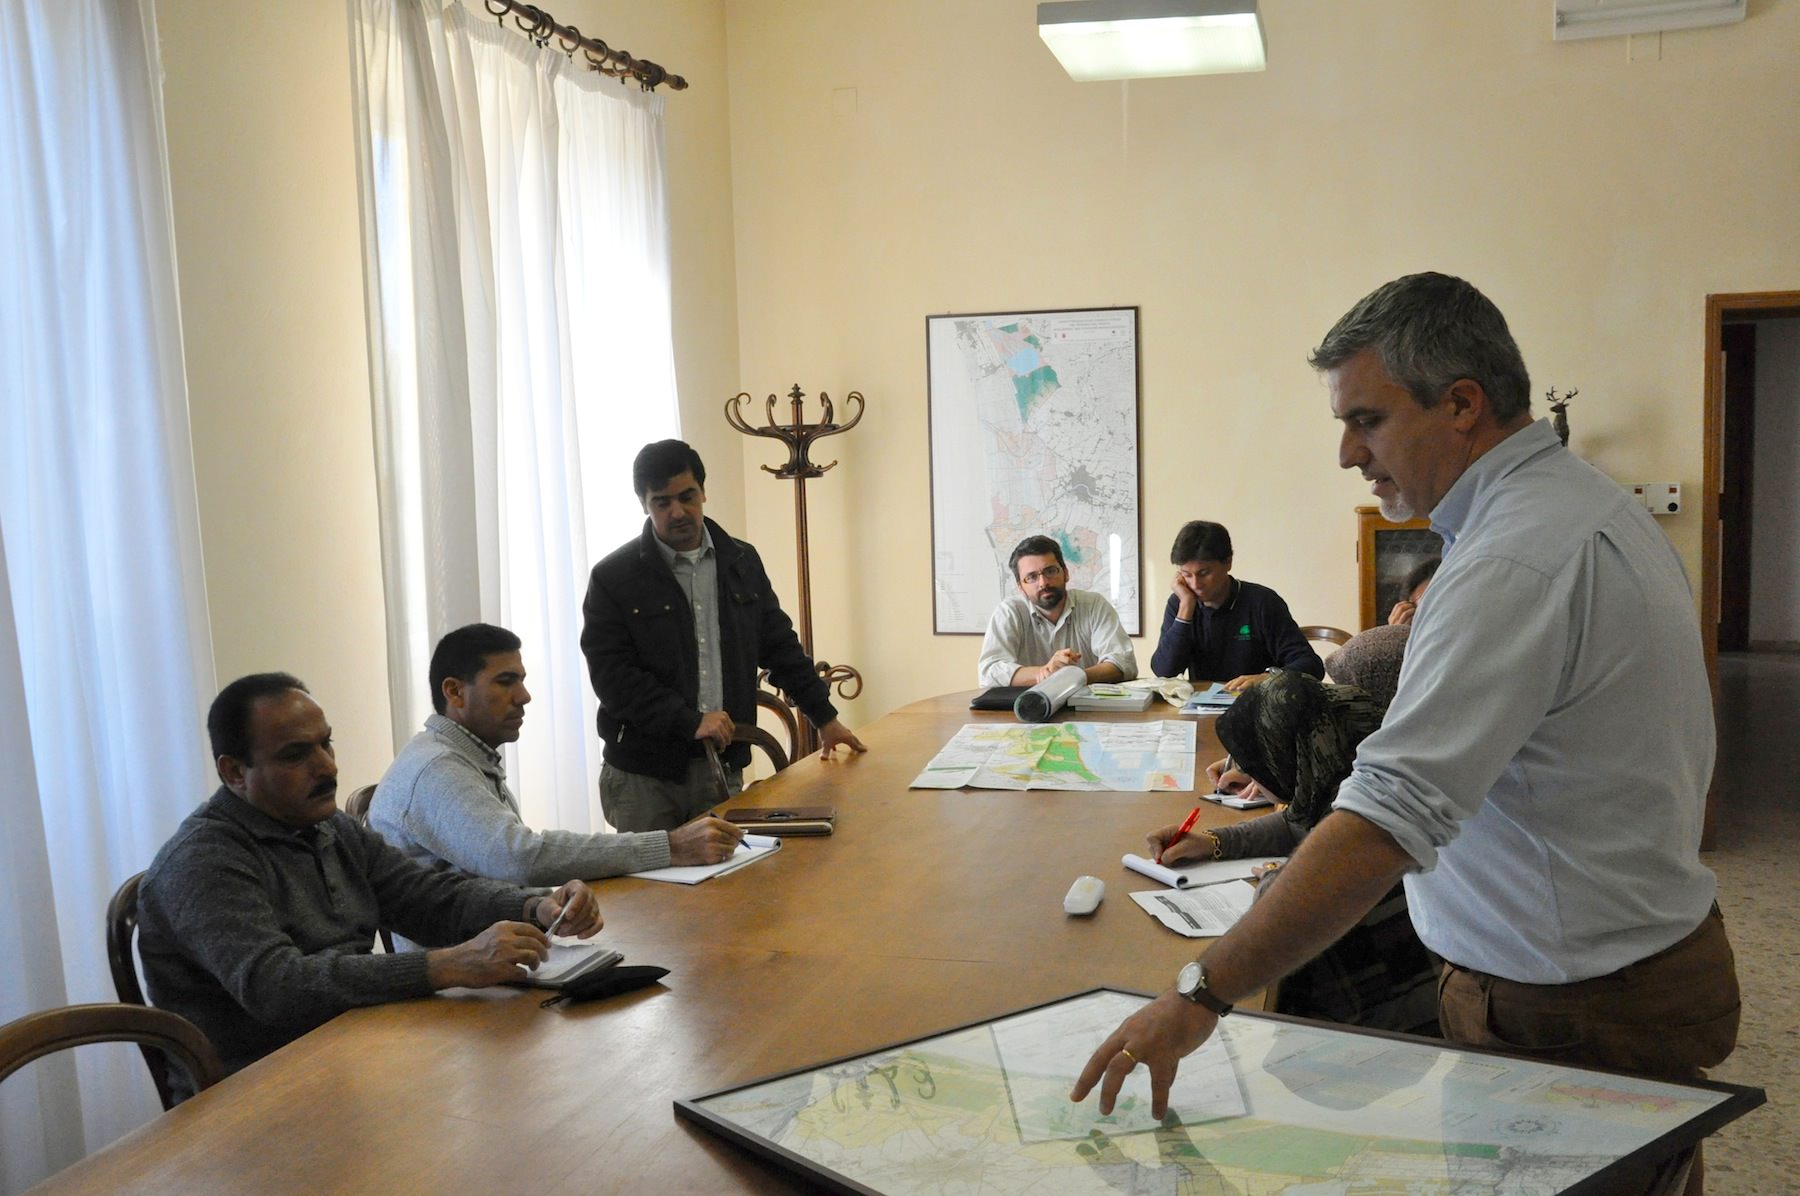 La delegazione irachena visita il Parco di San Rossore